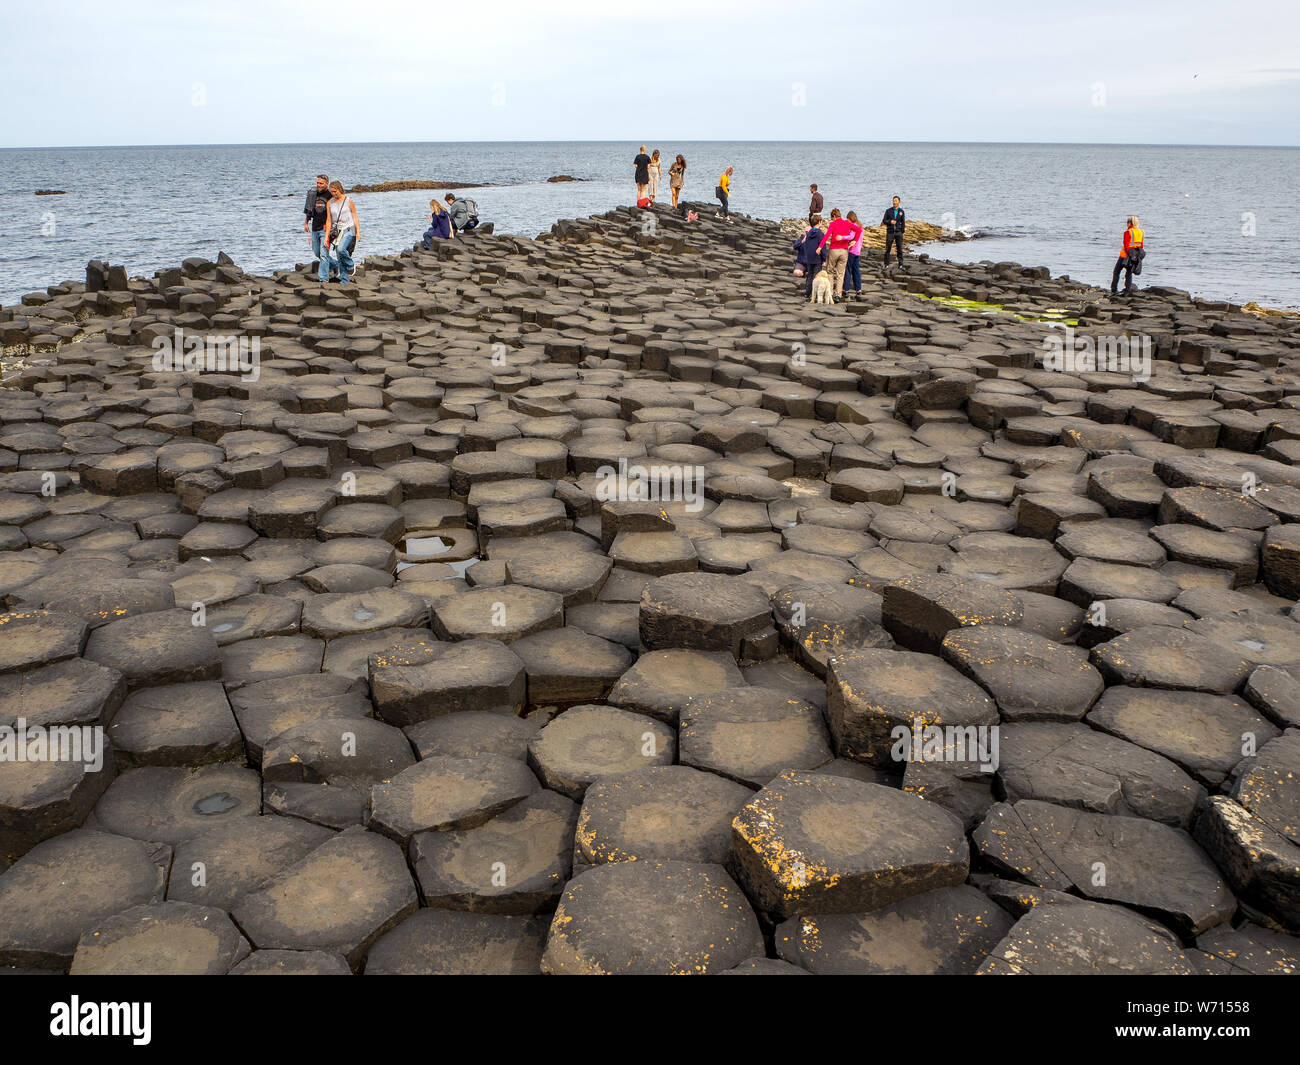 El condado de Antrim, Irlanda del Norte, Reino Unido - 17 de julio de 2019: Los visitantes de Giant's Causeway, singular formación geológica hexagonales de basalto volcánico rocas. Foto de stock